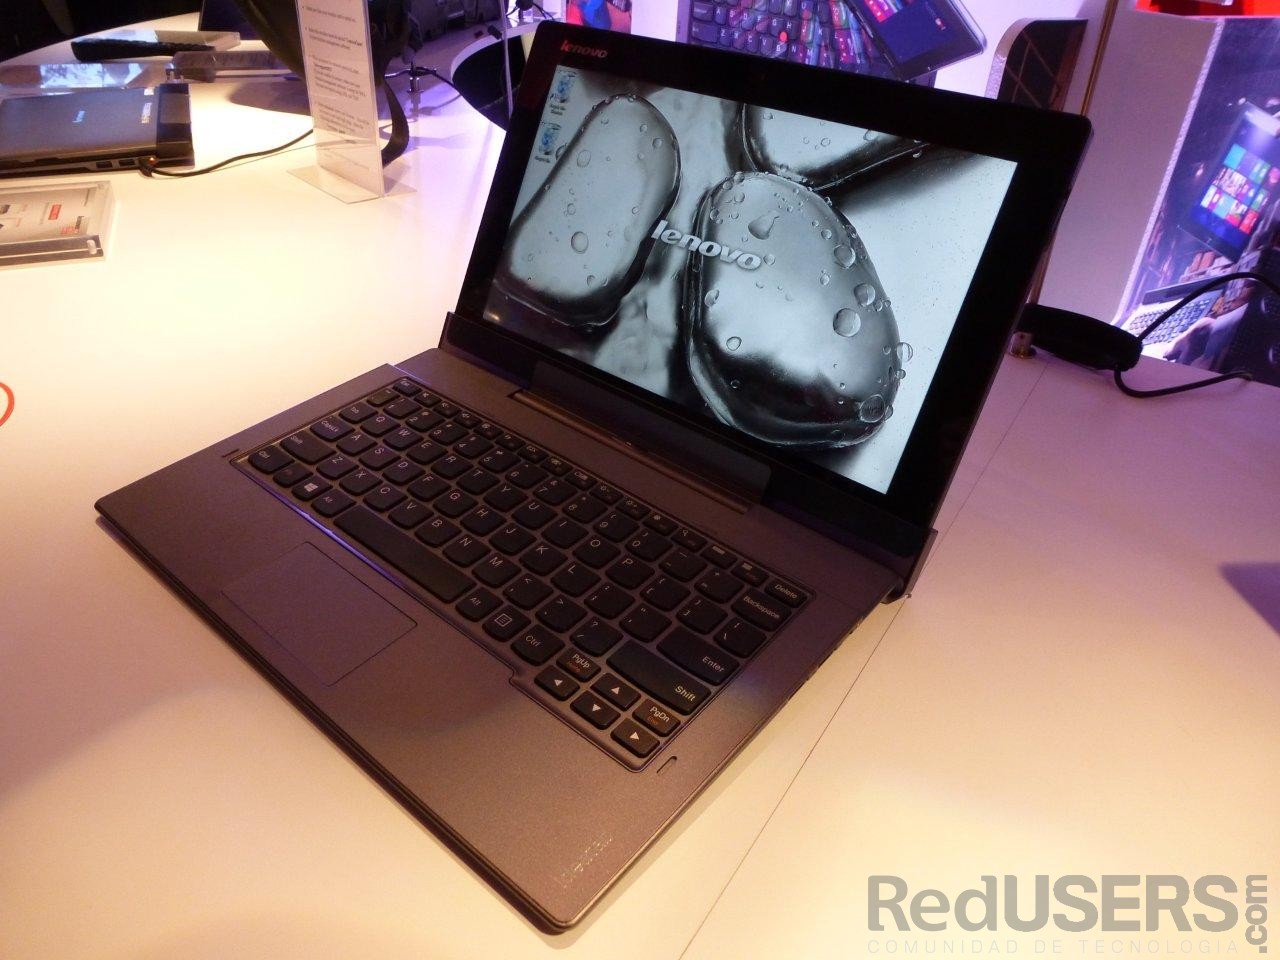 La IdeaTab Lynx, una de las laptops híbridas mostradas por Lenovo en la feria